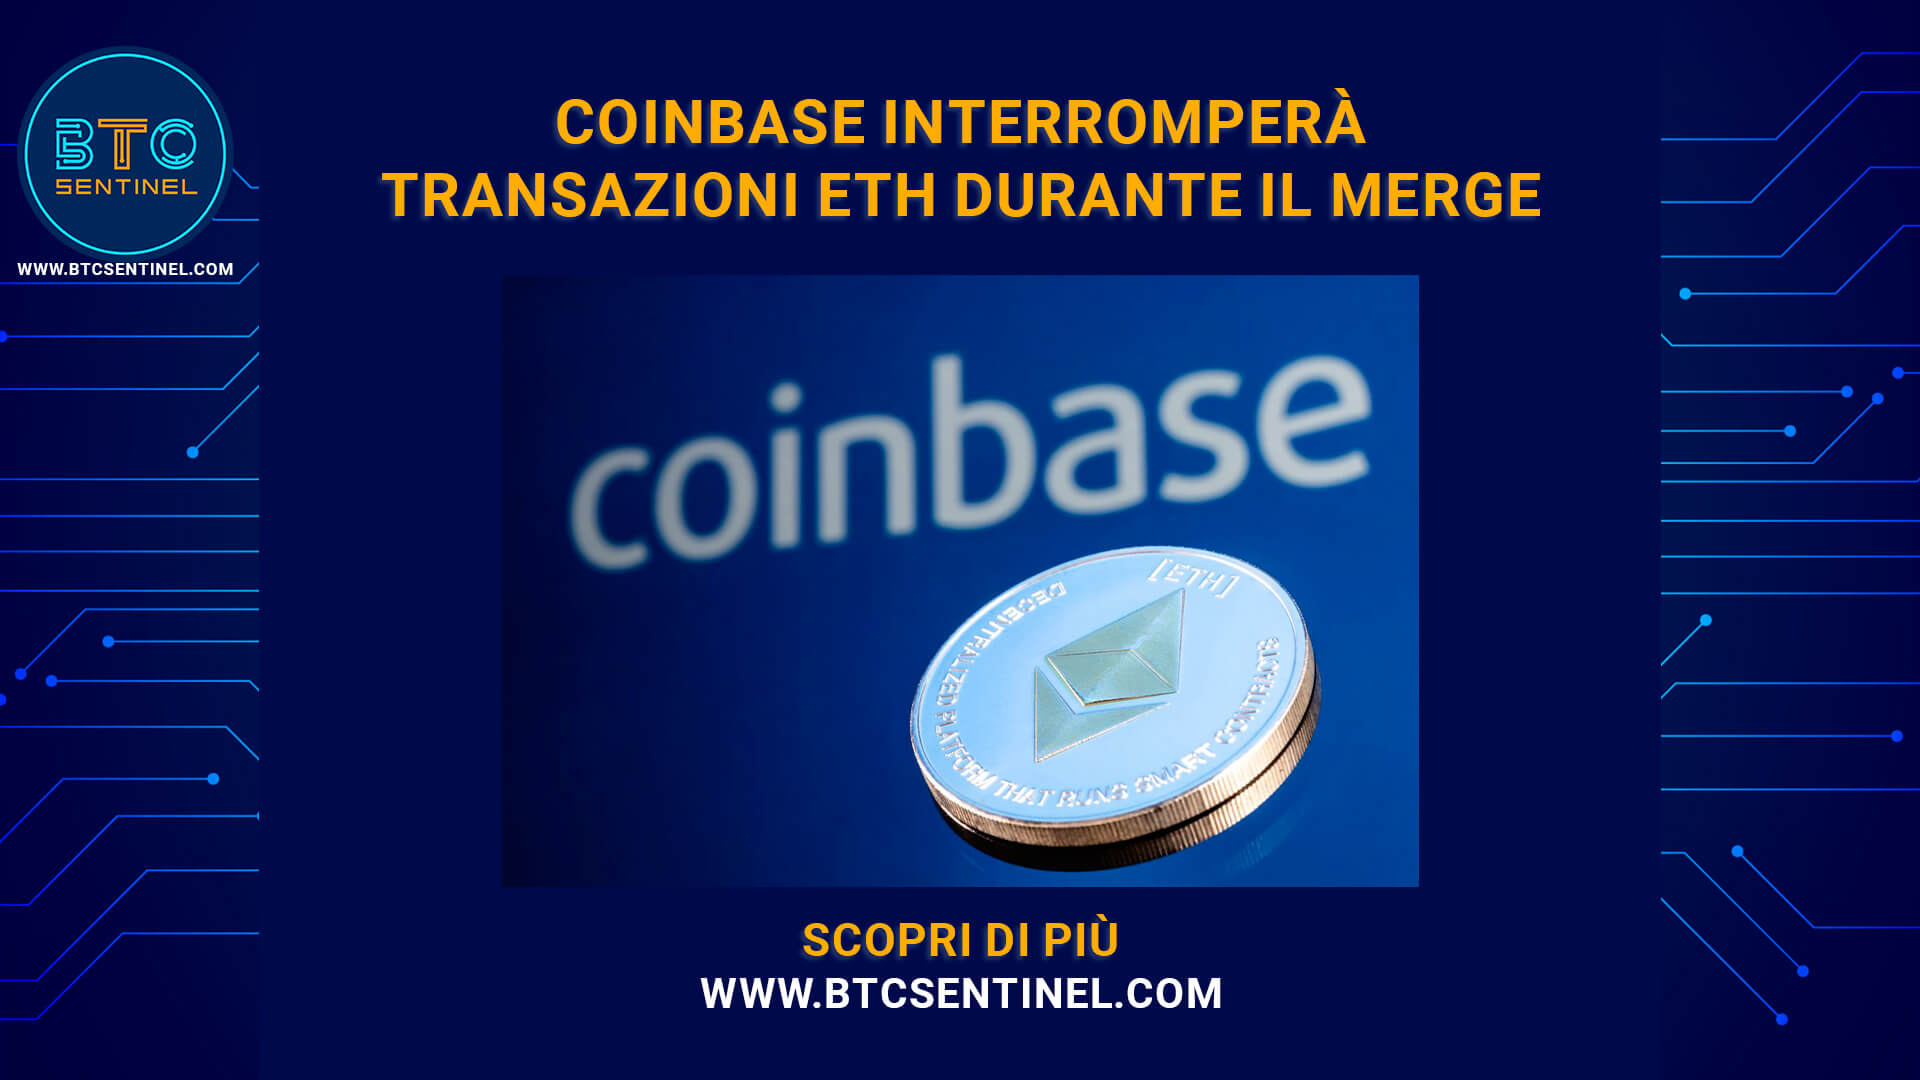 Coinbase interromperà le transazioni di Ethereum durante il merge come misura precauzionale